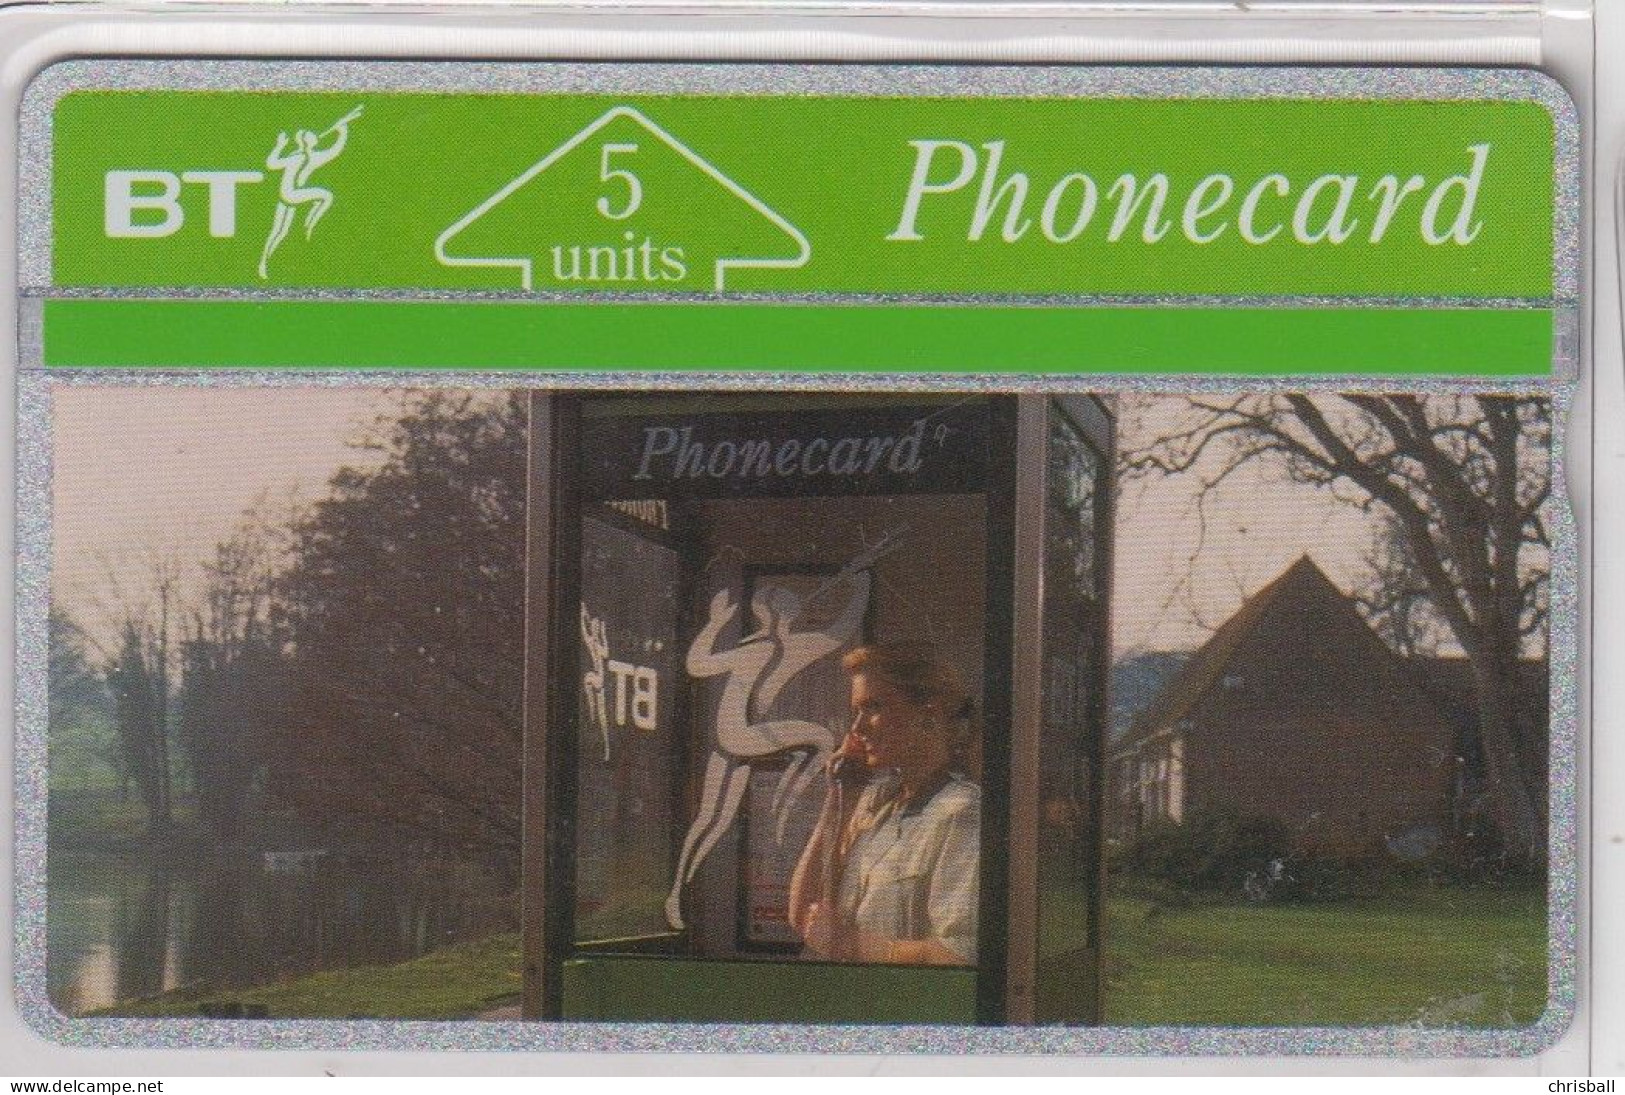 BT 5 Unit  - 'Promotional Phonecards'  Mint - BT Emissioni Commemorative